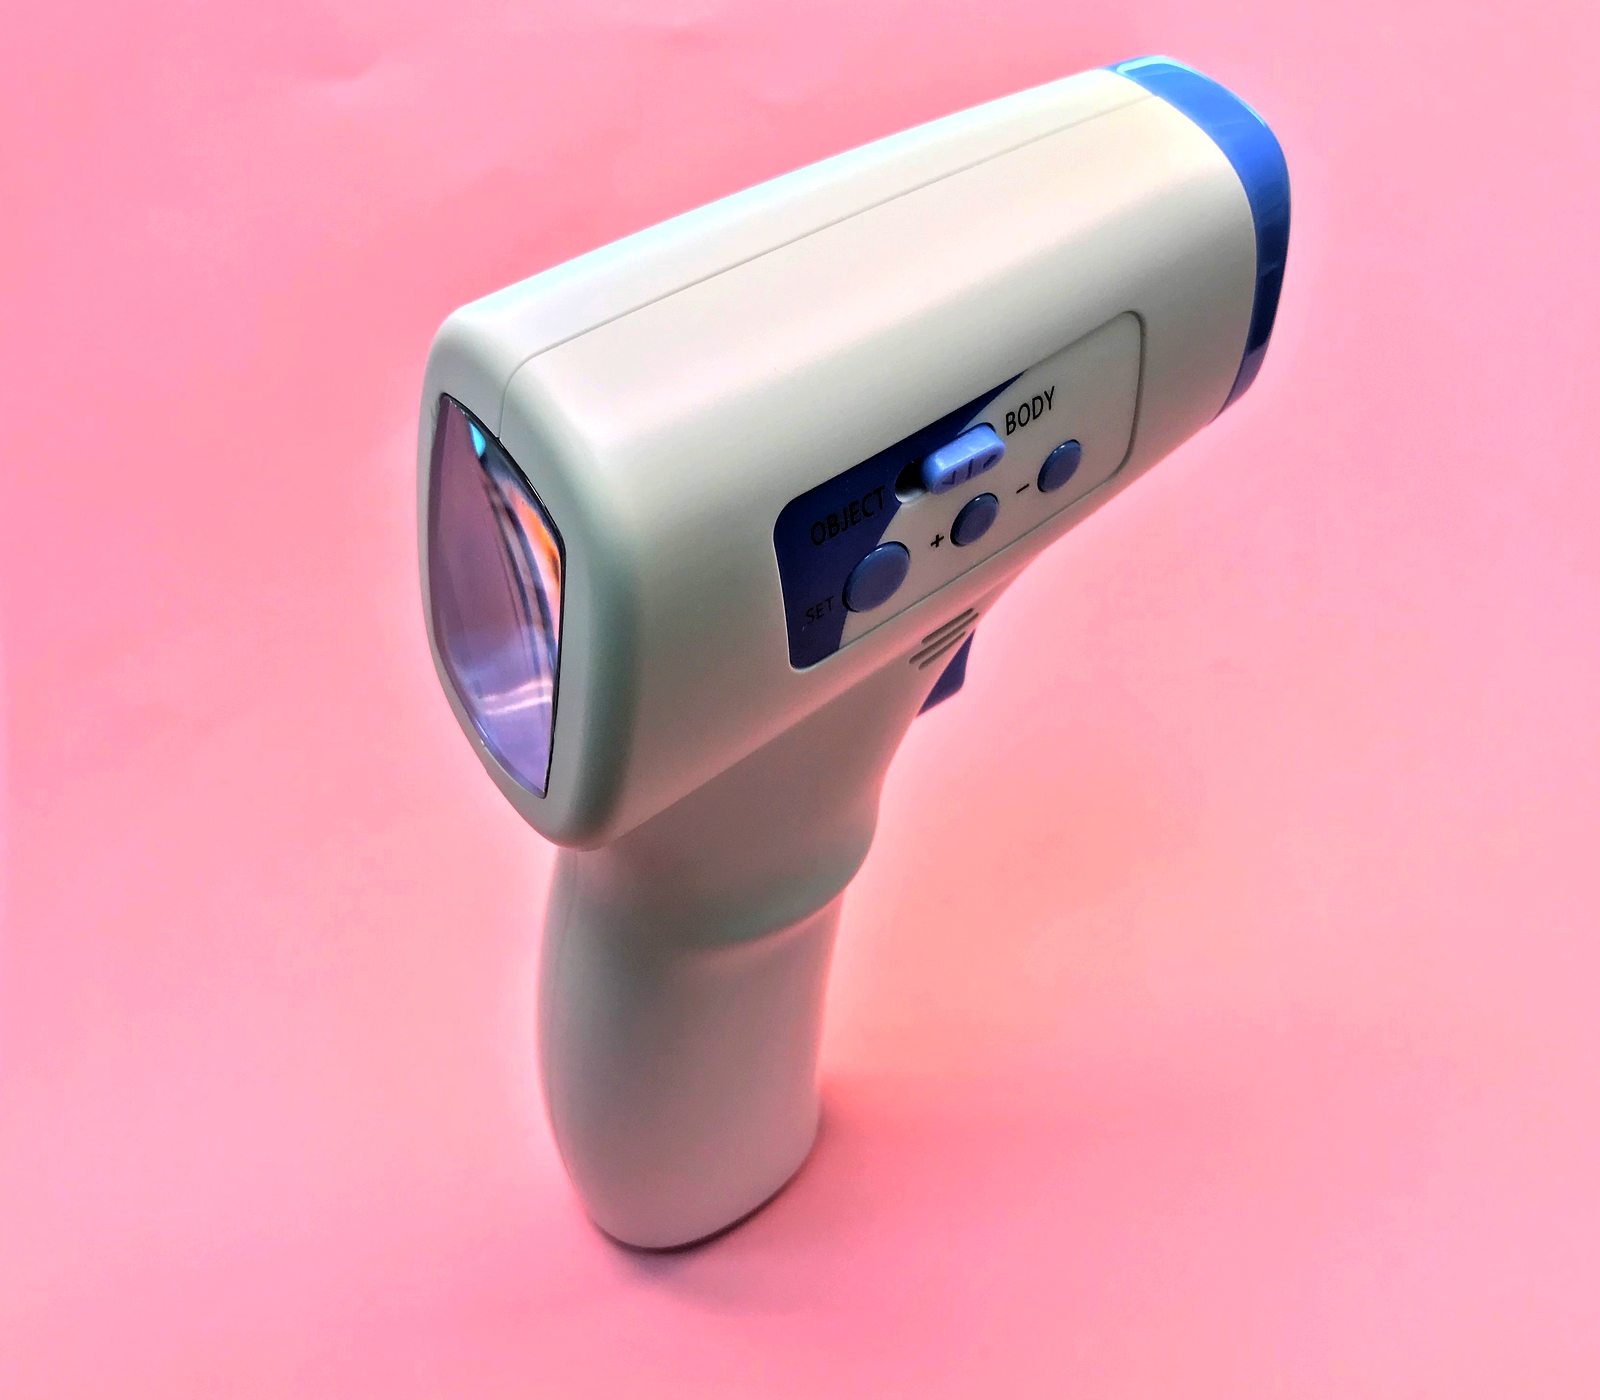 termometro infrarossi misurazione temperatura emac